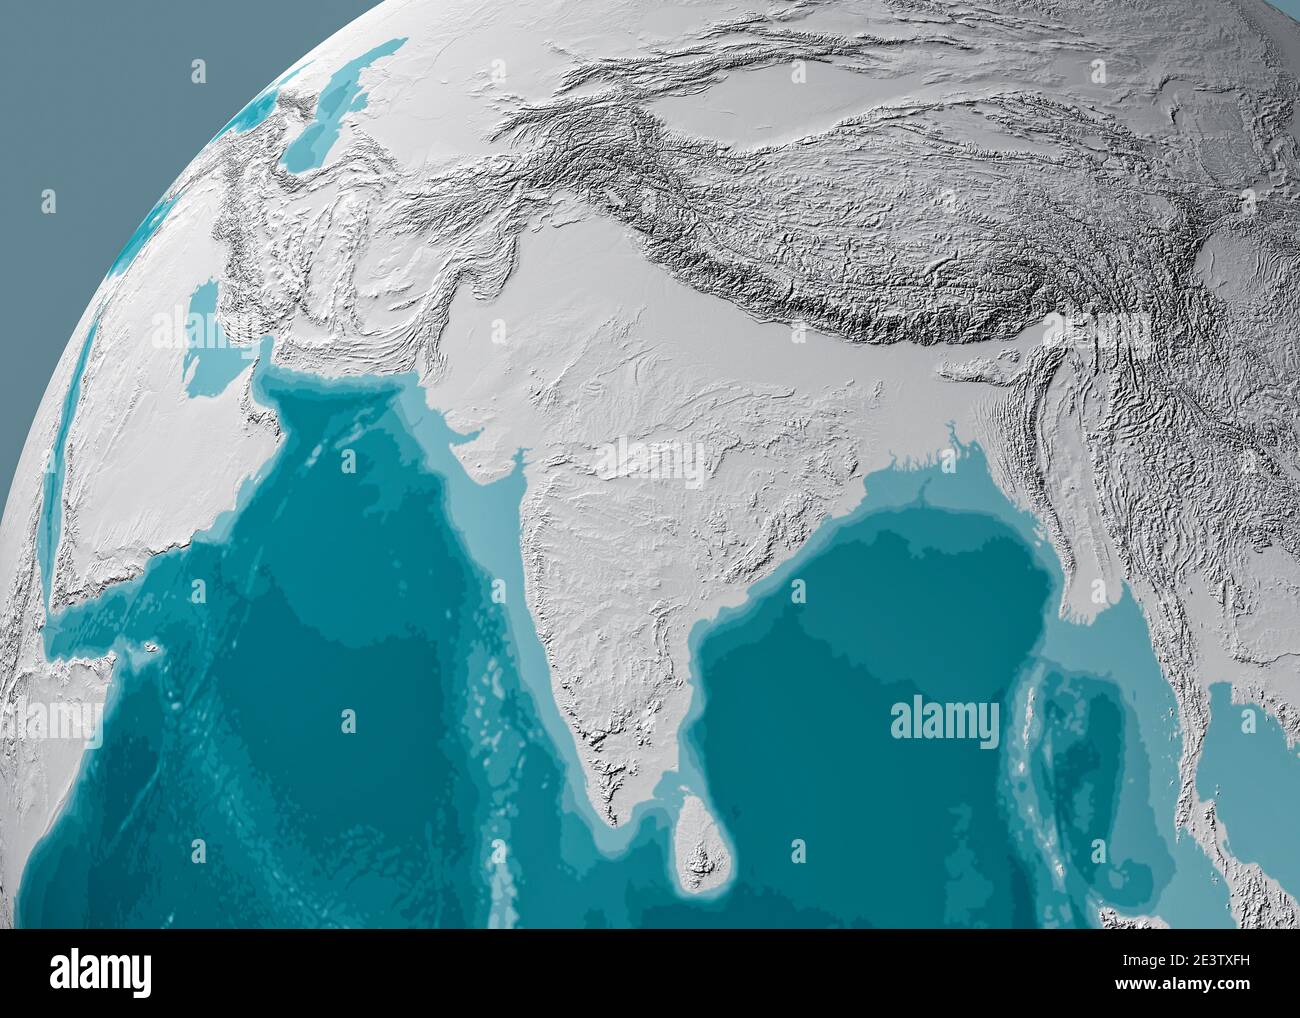 Weltkarte von Asien, Satellitenansicht, geographische Karte, Physik. Kartographie, Reliefatlas. 3d-Rendering. Indien, Sri Lanka, Pakistan, Nepal und Himalaya Stockfoto